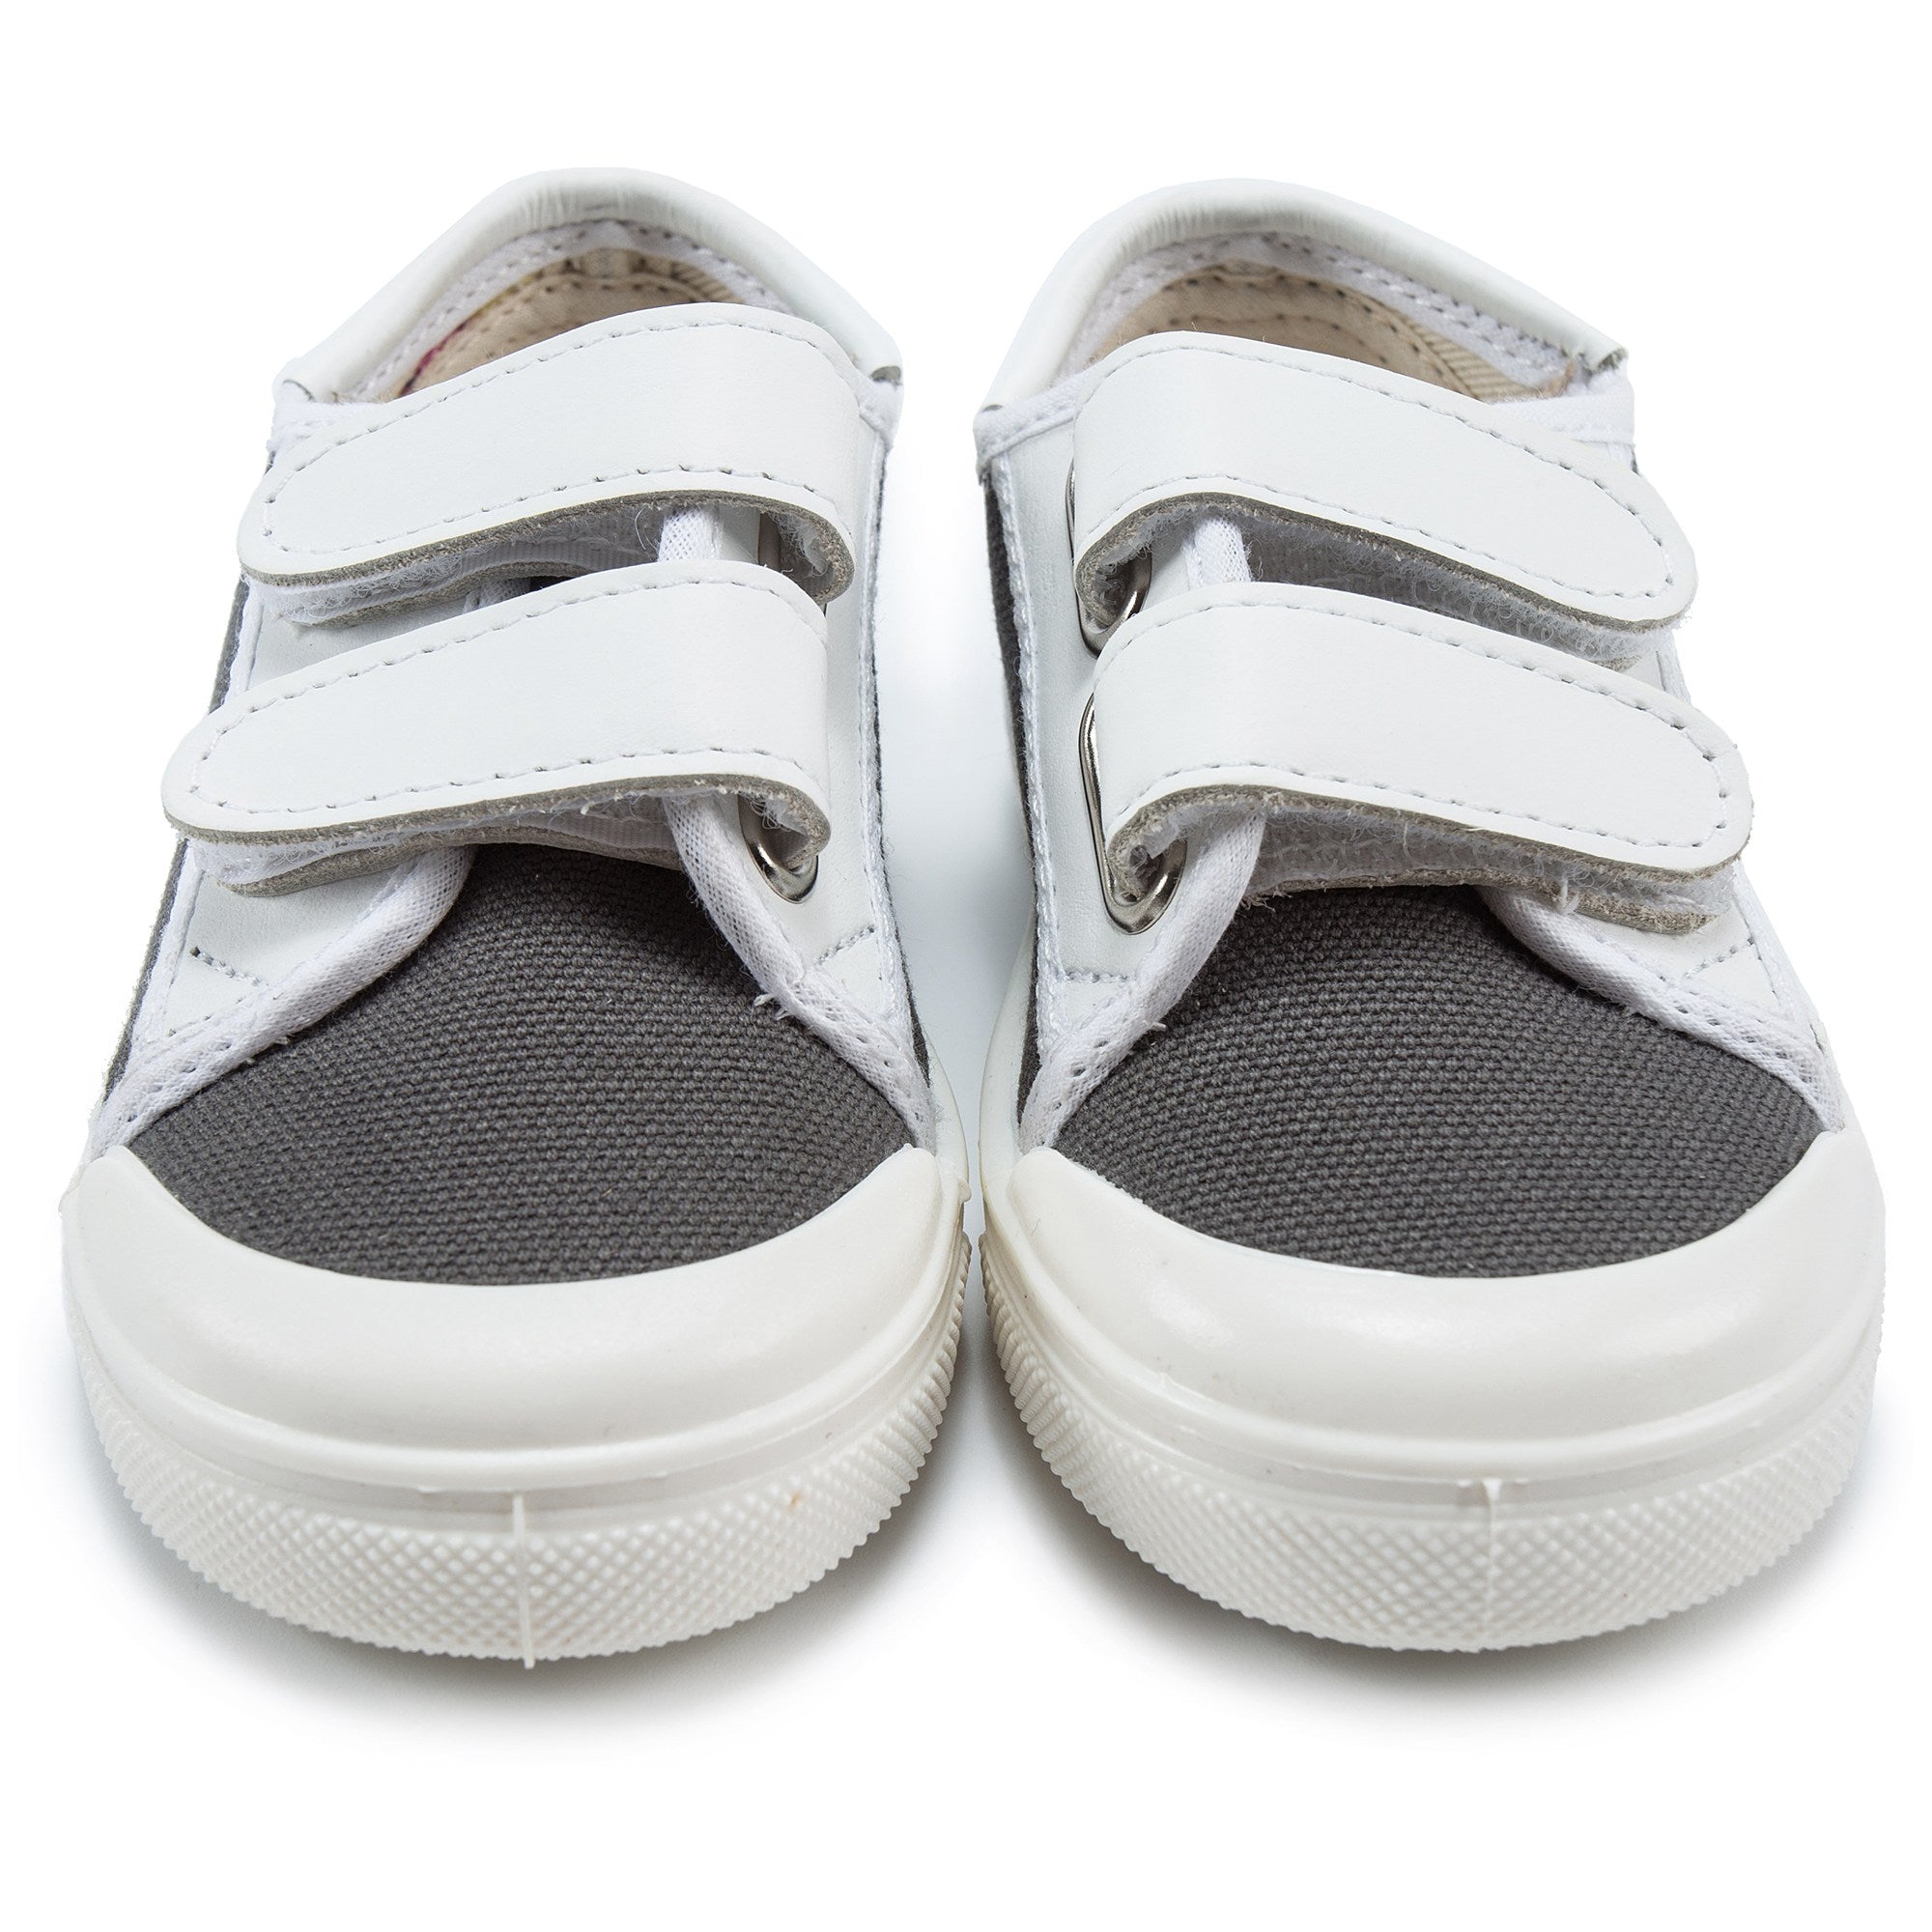 Baby Boys Dark Grey & White Shoes